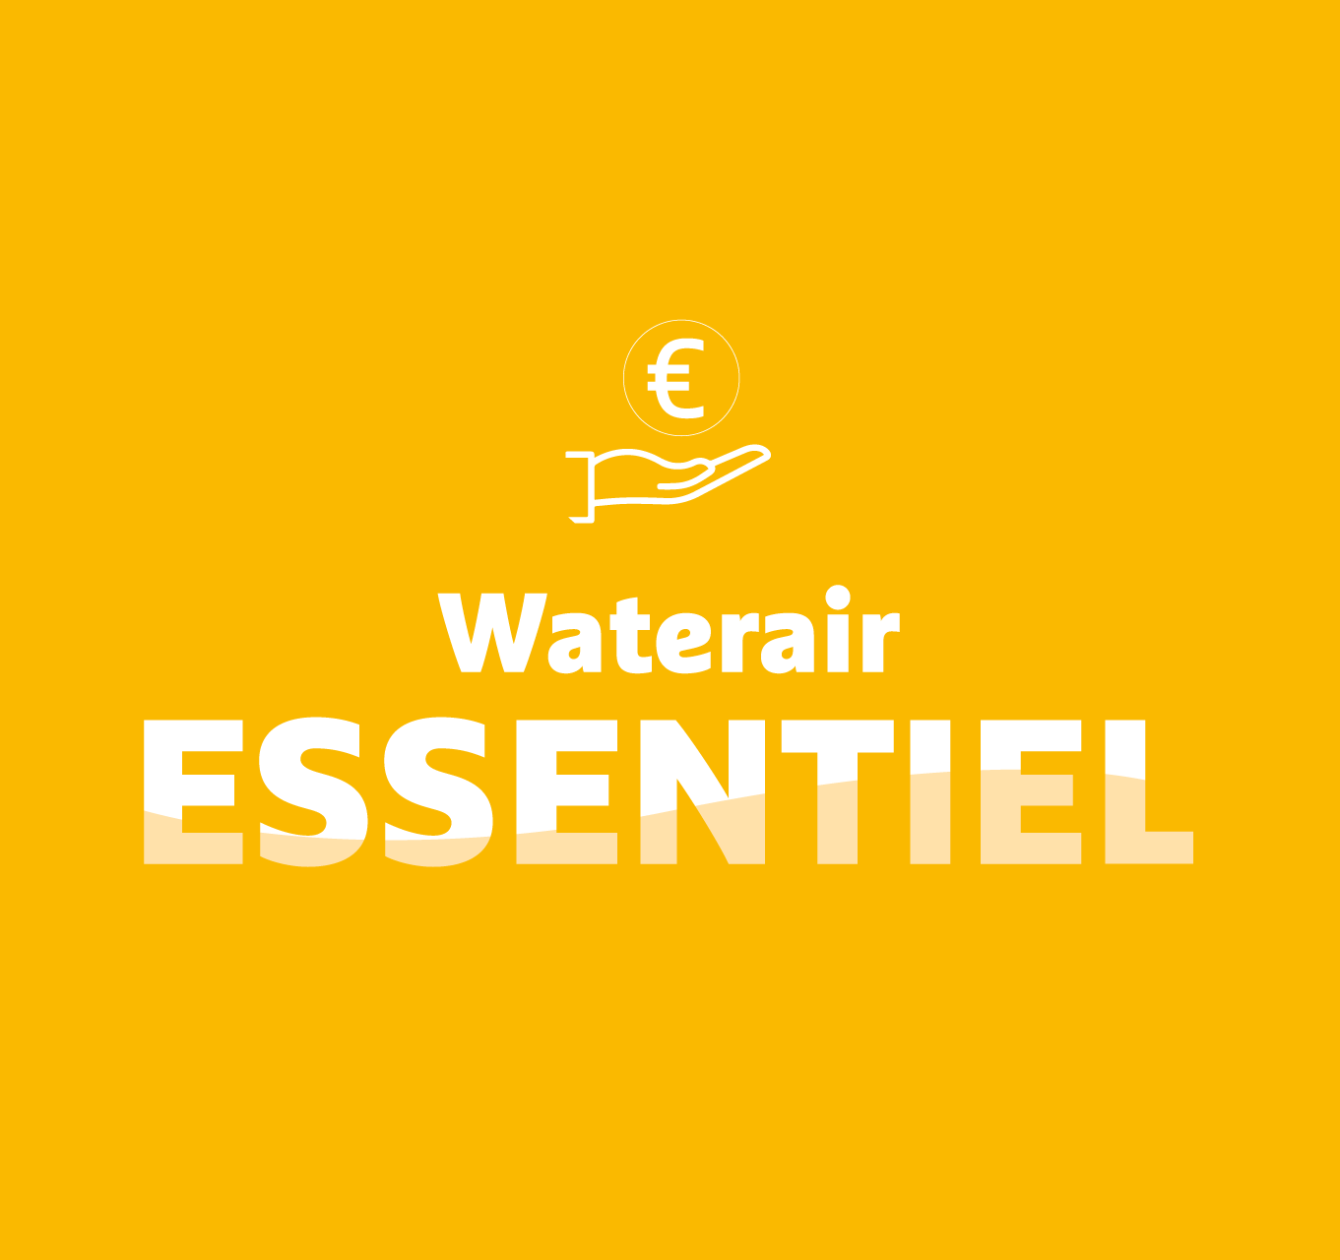 Waterair Essentiel: su piscina sostenible al precio más justo